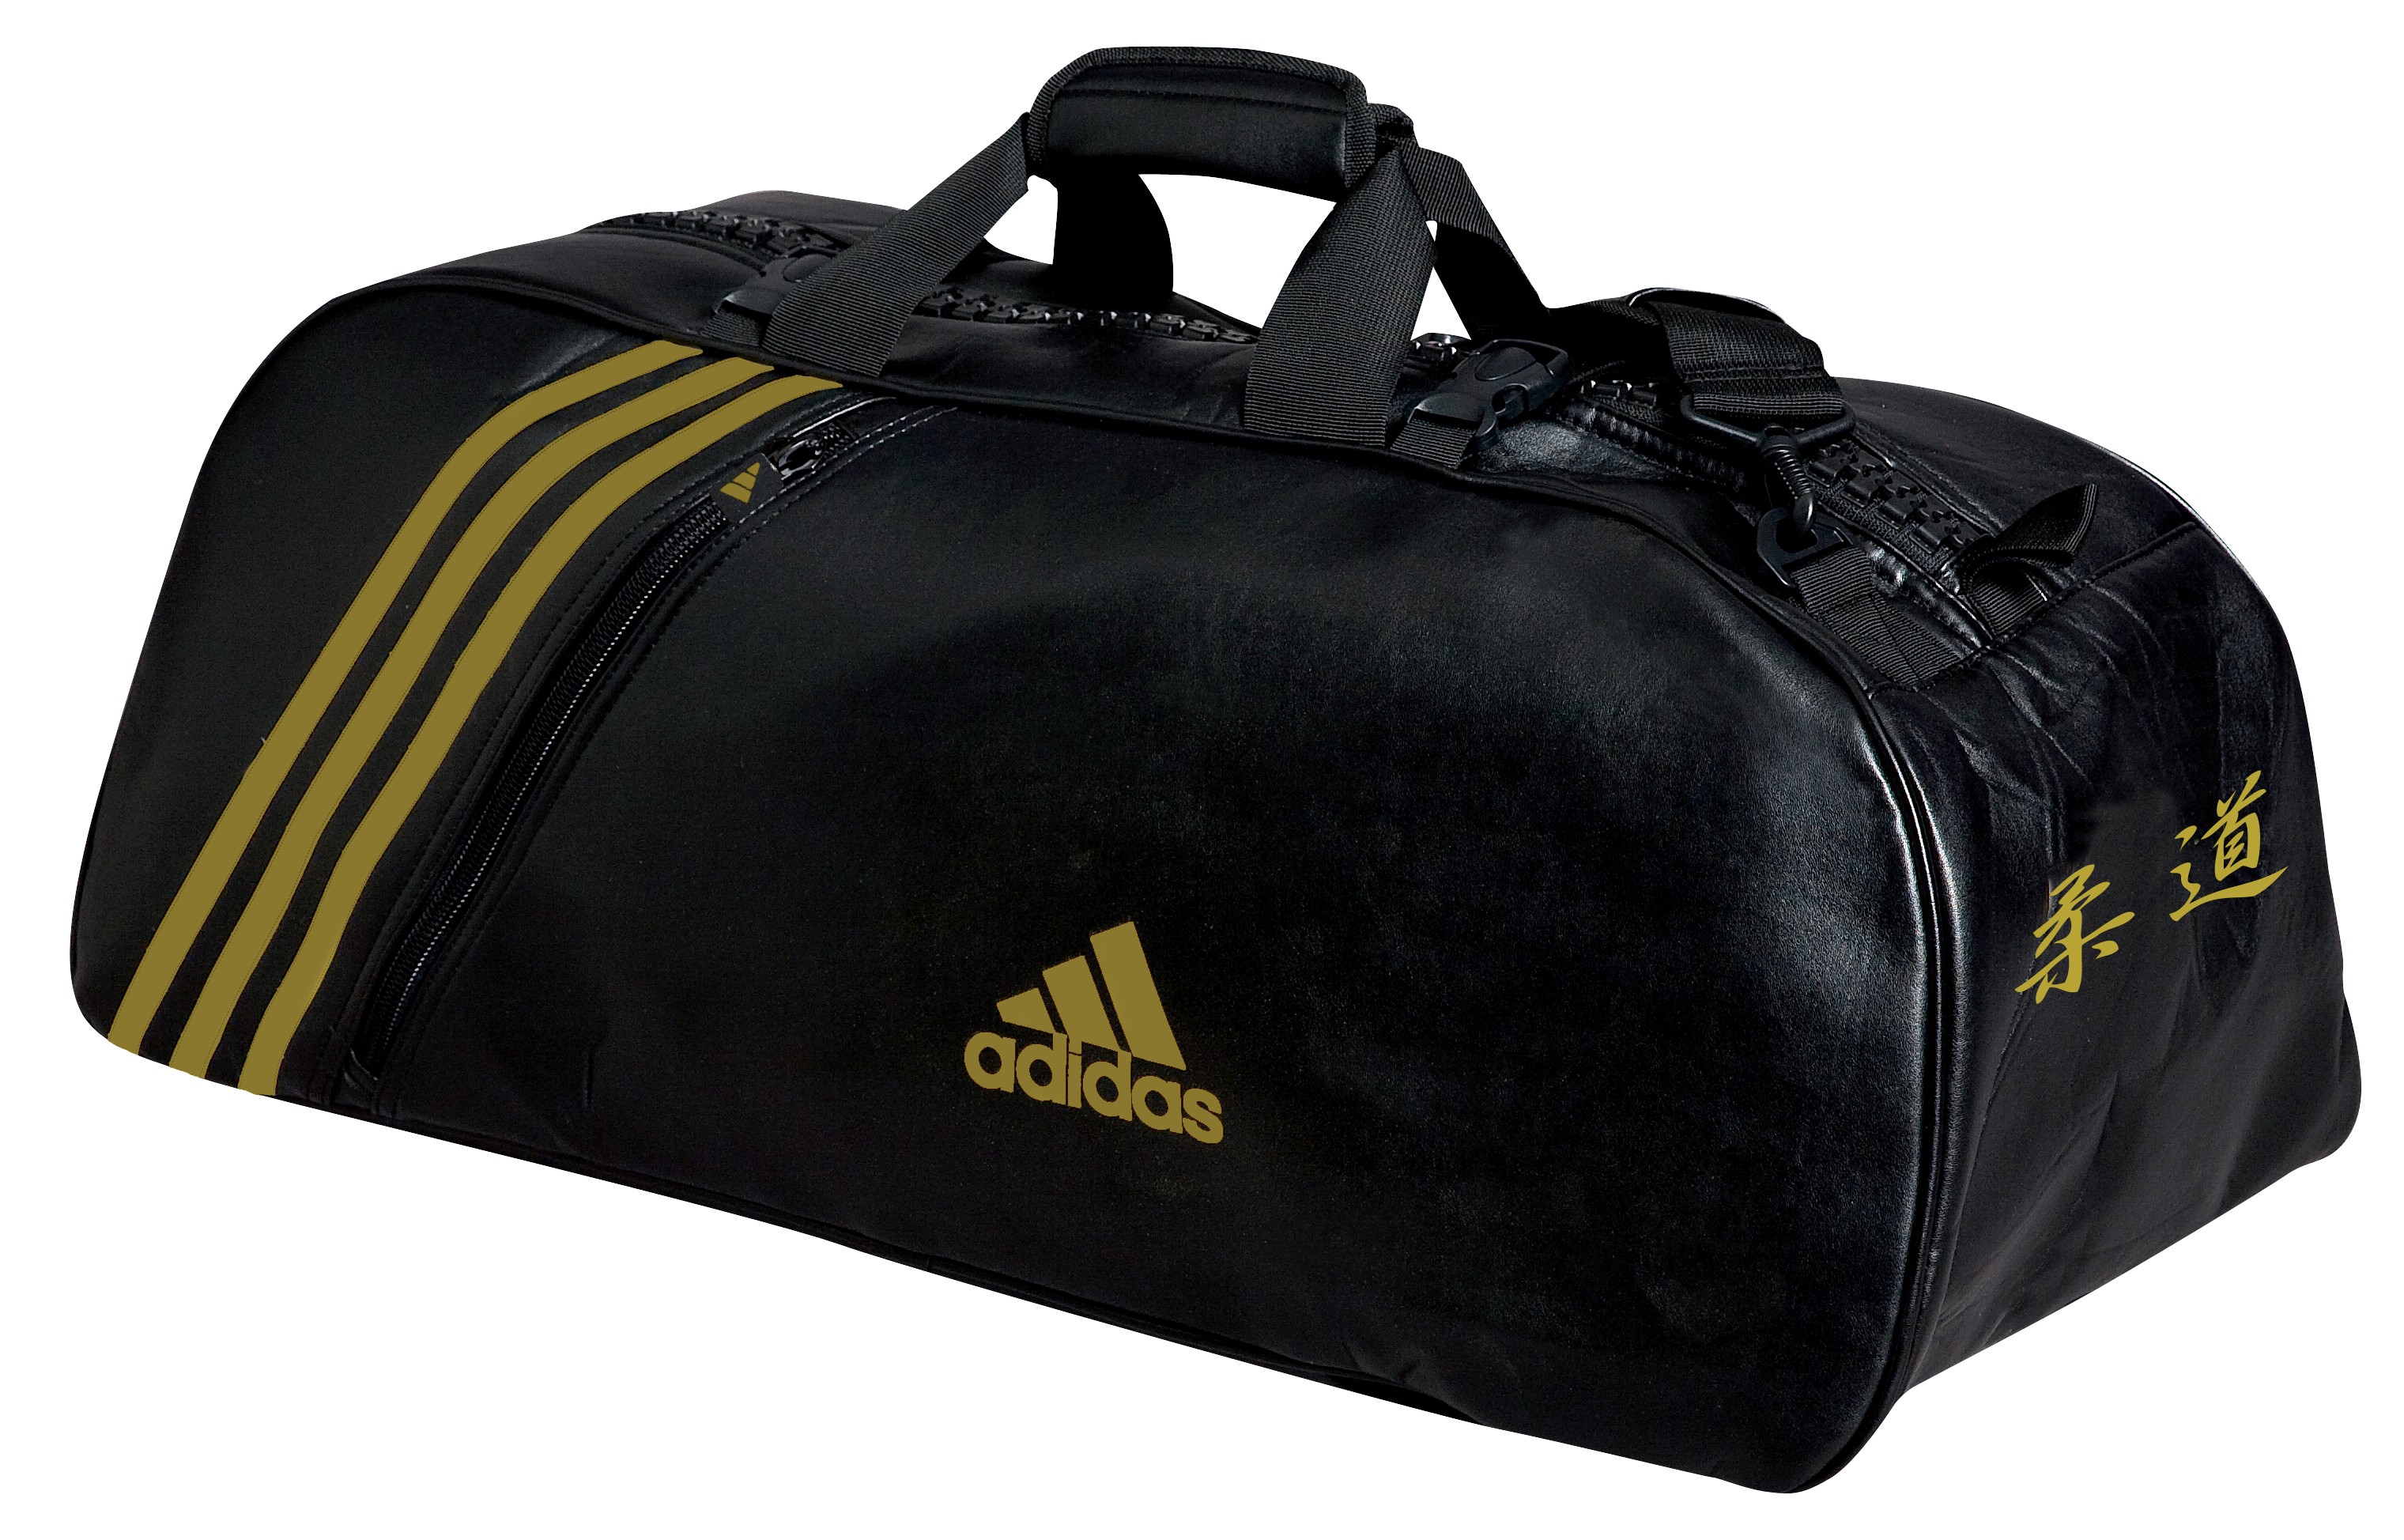 Sac de sport noir et or Adidas convertible en sac à dos avec logo judo.